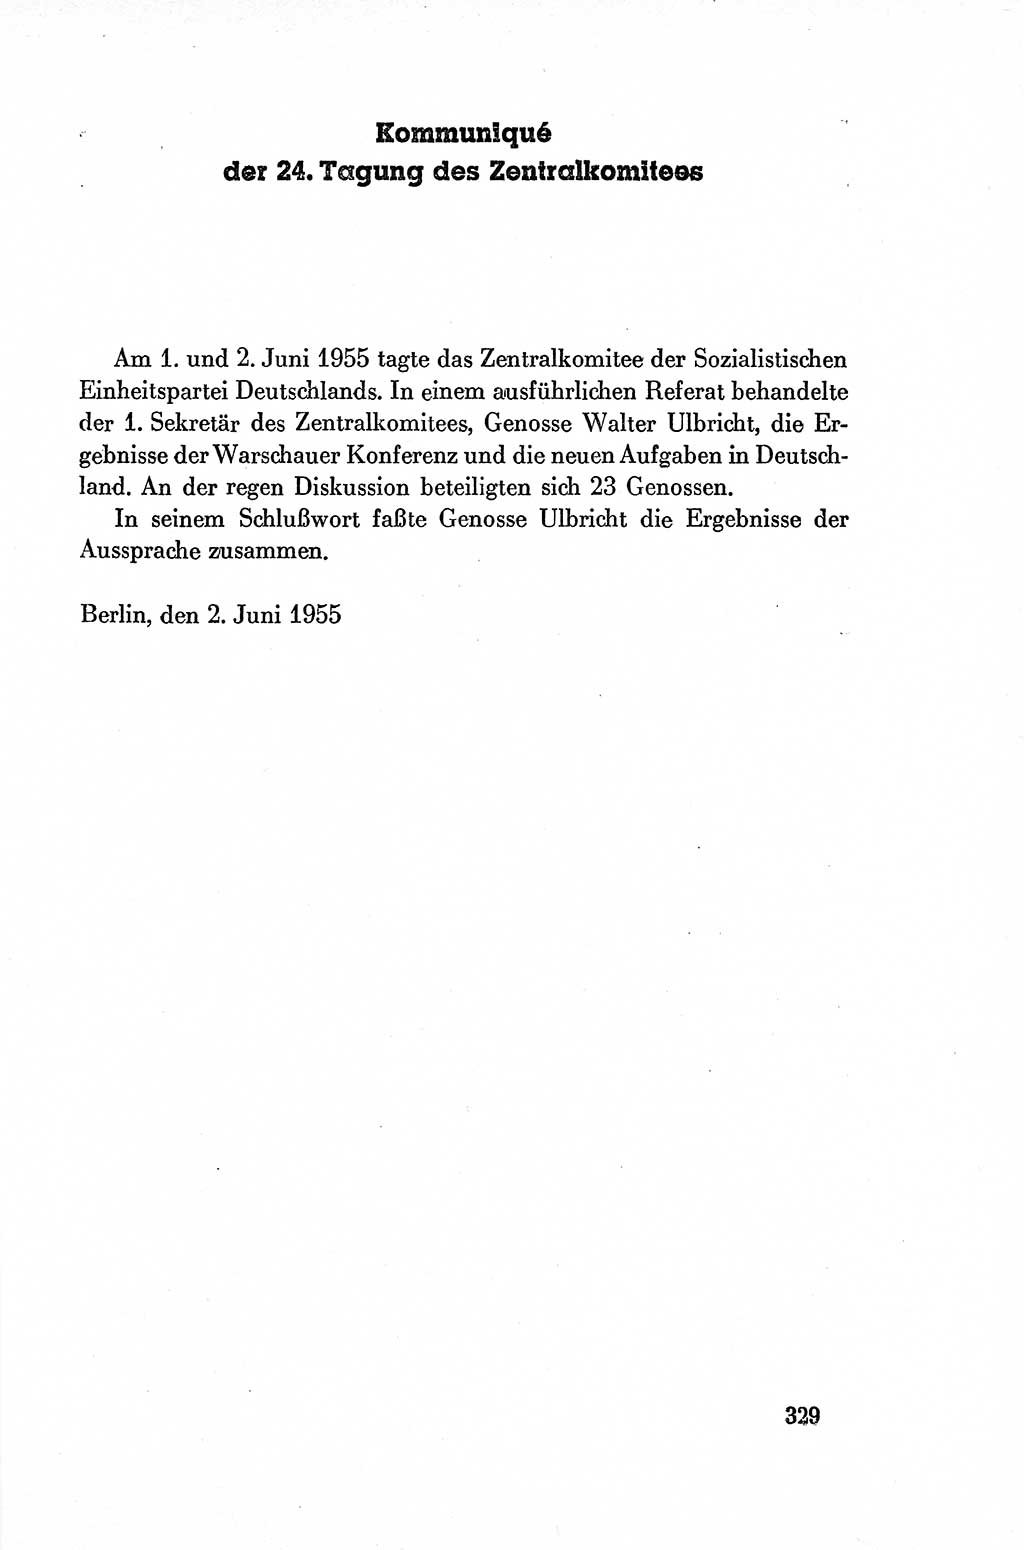 Dokumente der Sozialistischen Einheitspartei Deutschlands (SED) [Deutsche Demokratische Republik (DDR)] 1954-1955, Seite 329 (Dok. SED DDR 1954-1955, S. 329)